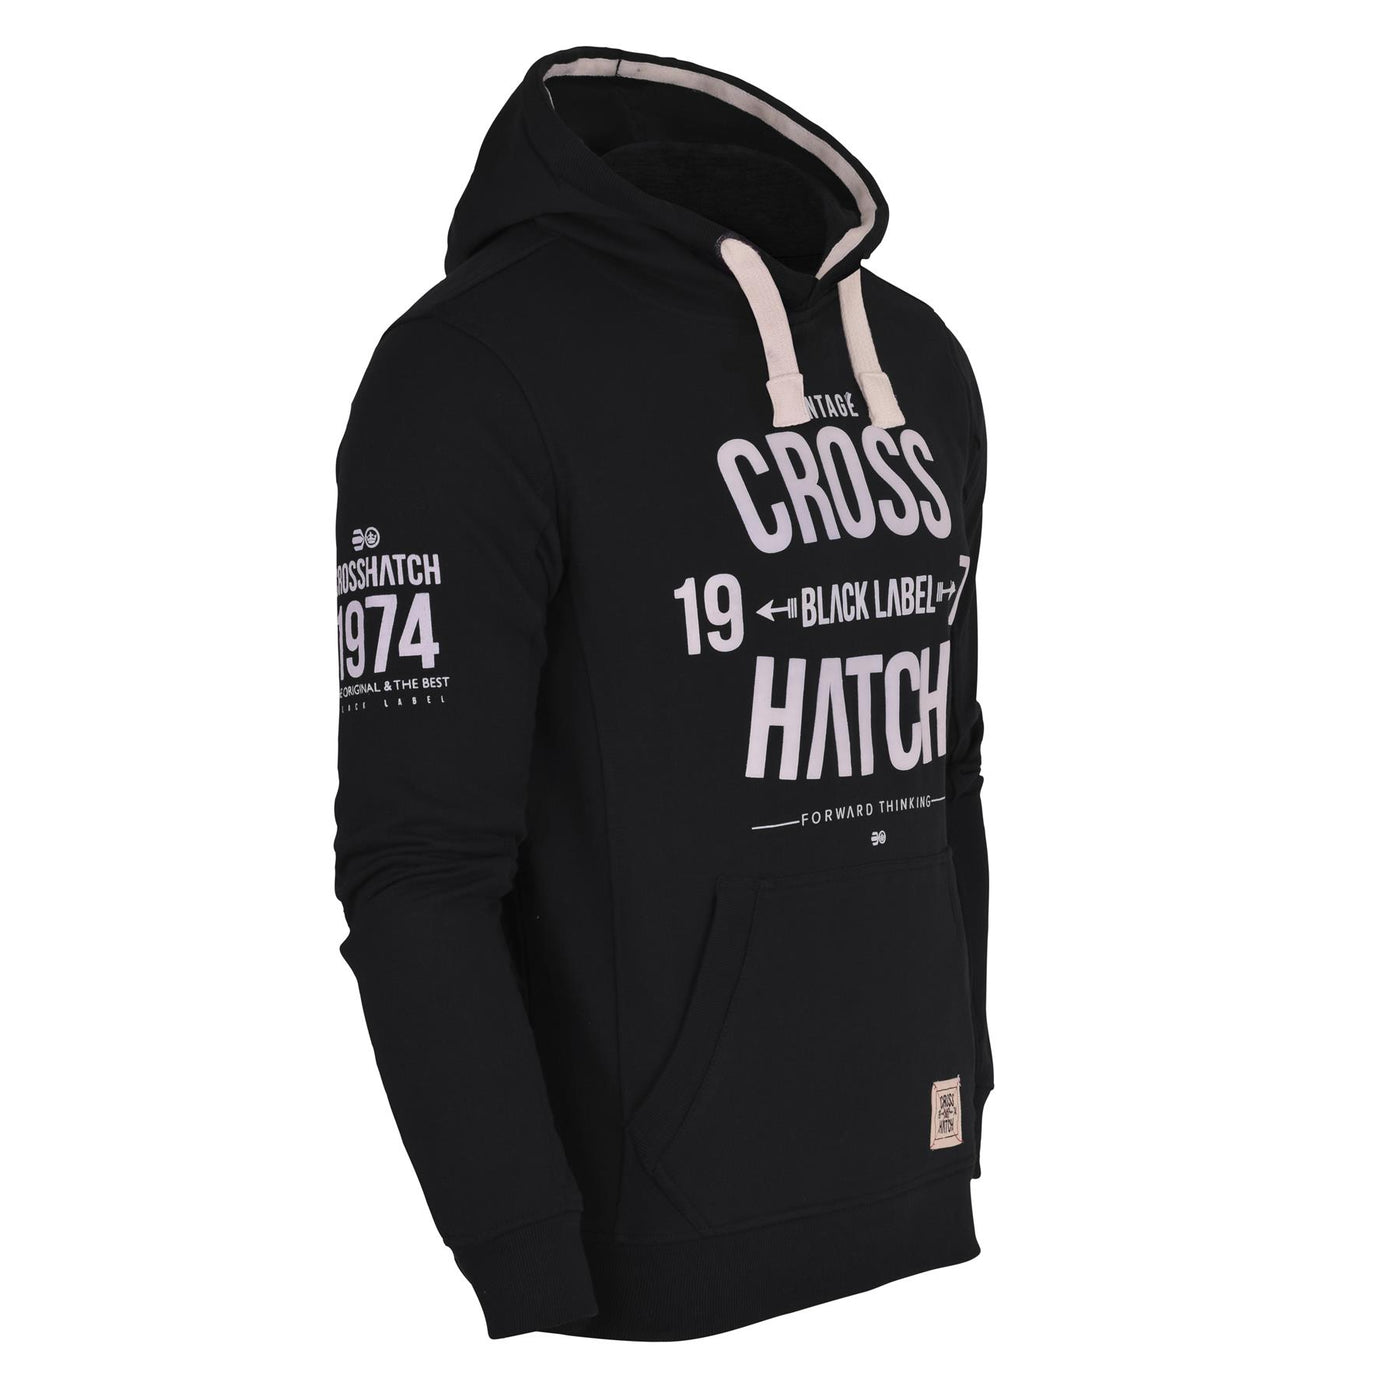 Crosshatch Mens Designer Casual Hooded Fleece Sweatshirt Jacket Overhead Pullover